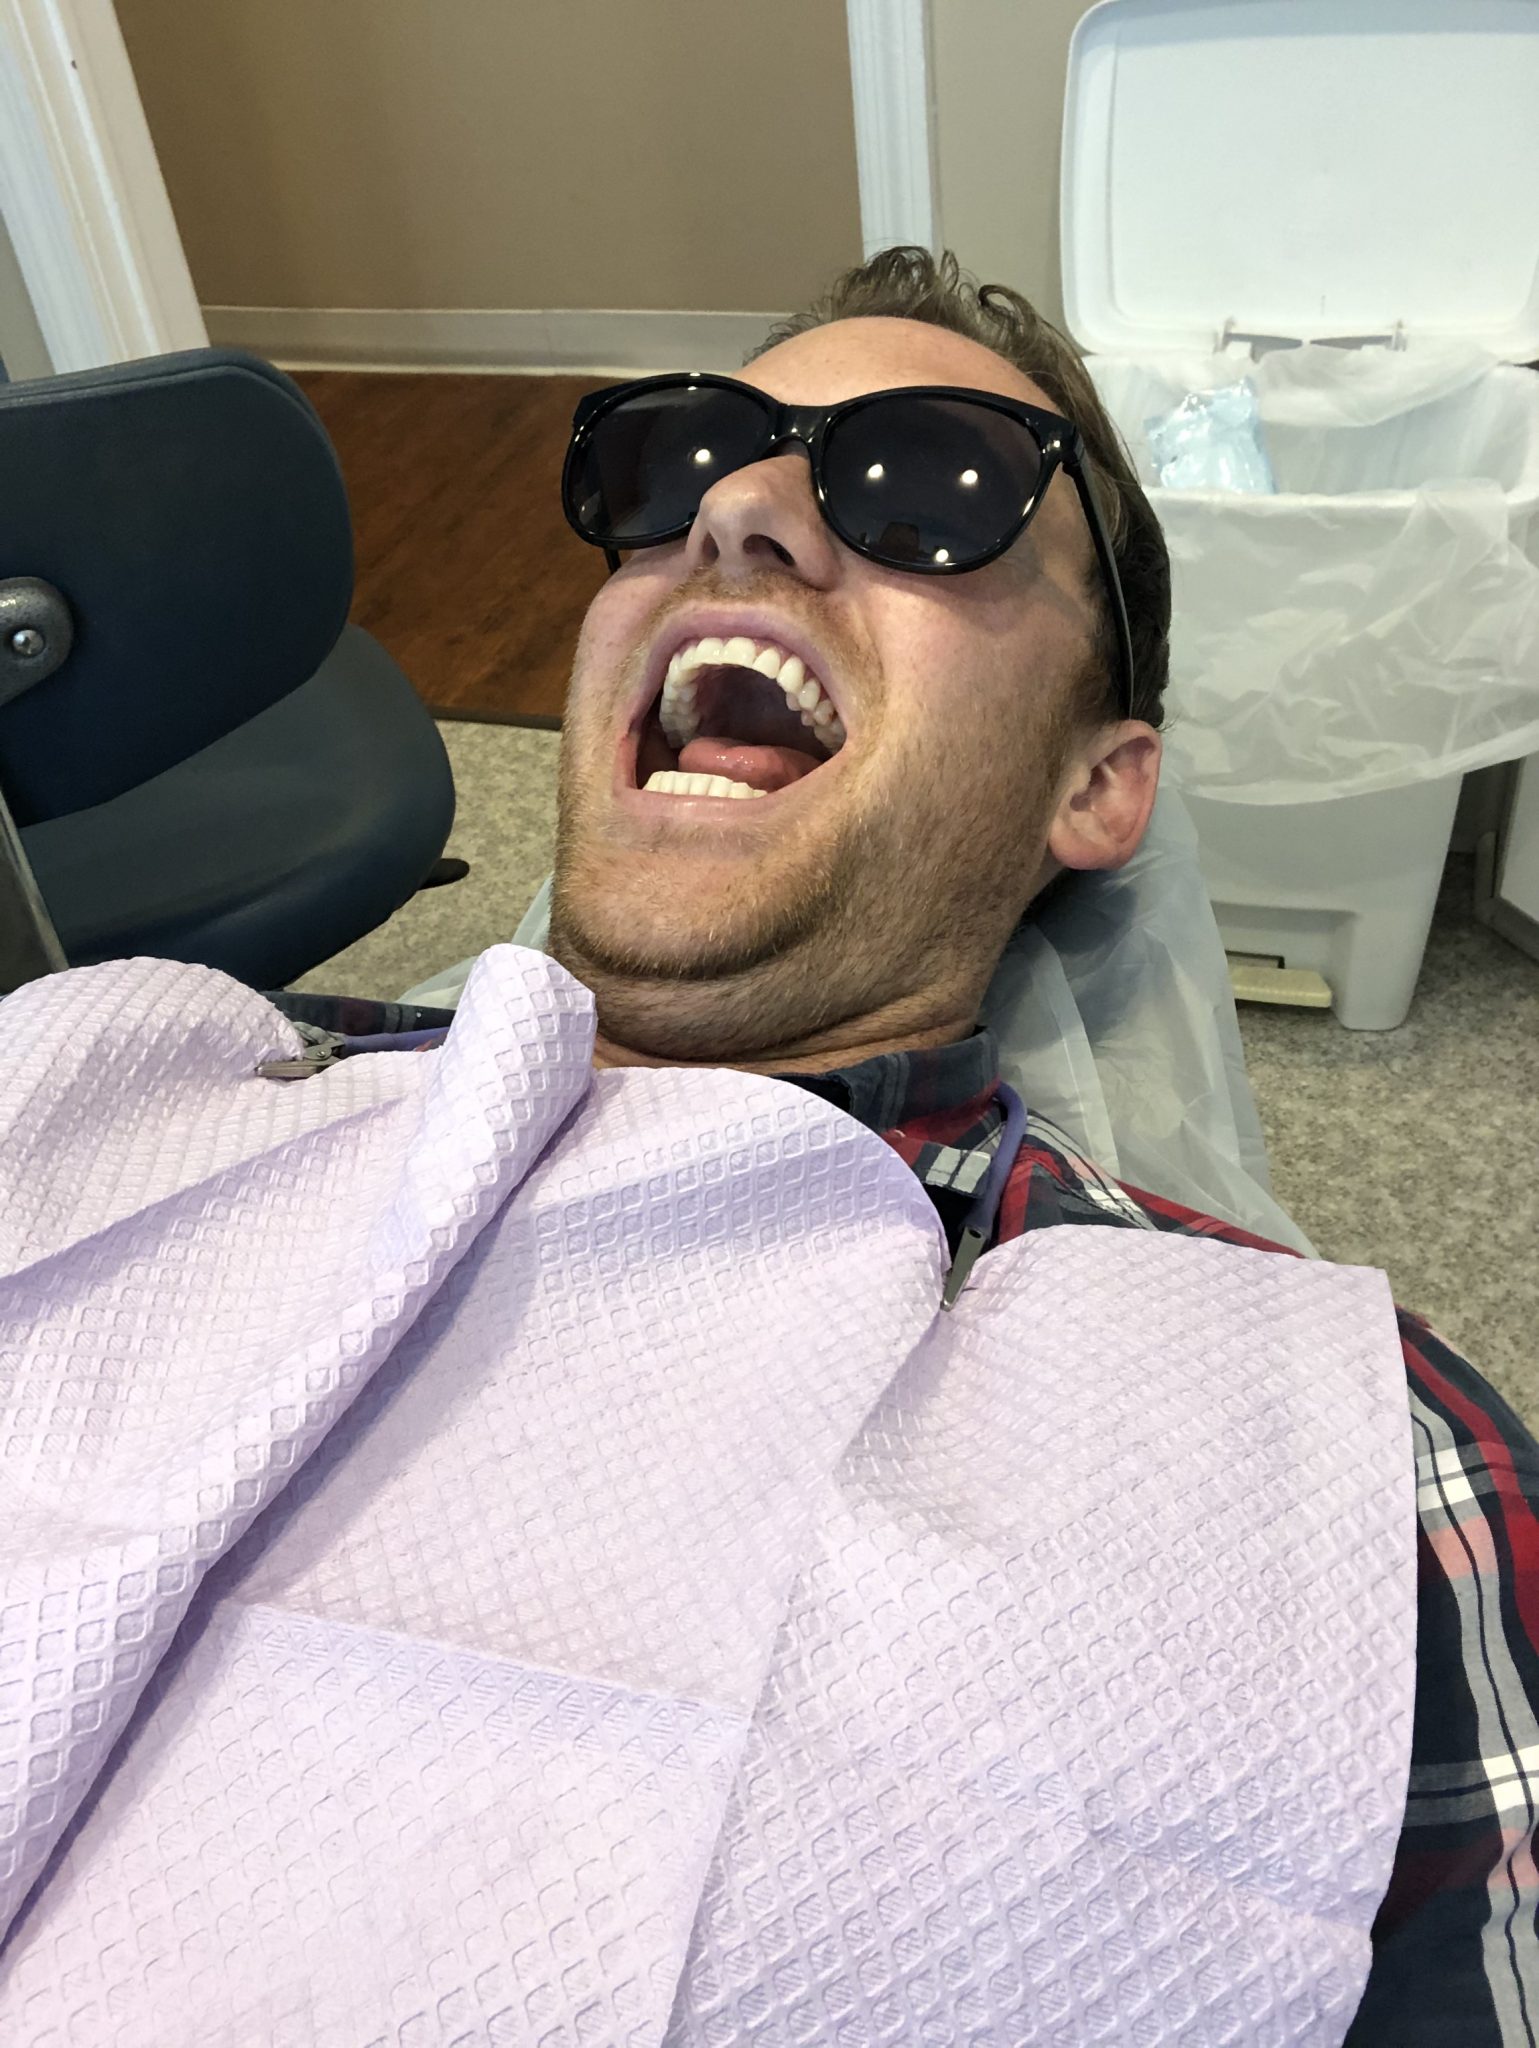 vertigo after dentist visit